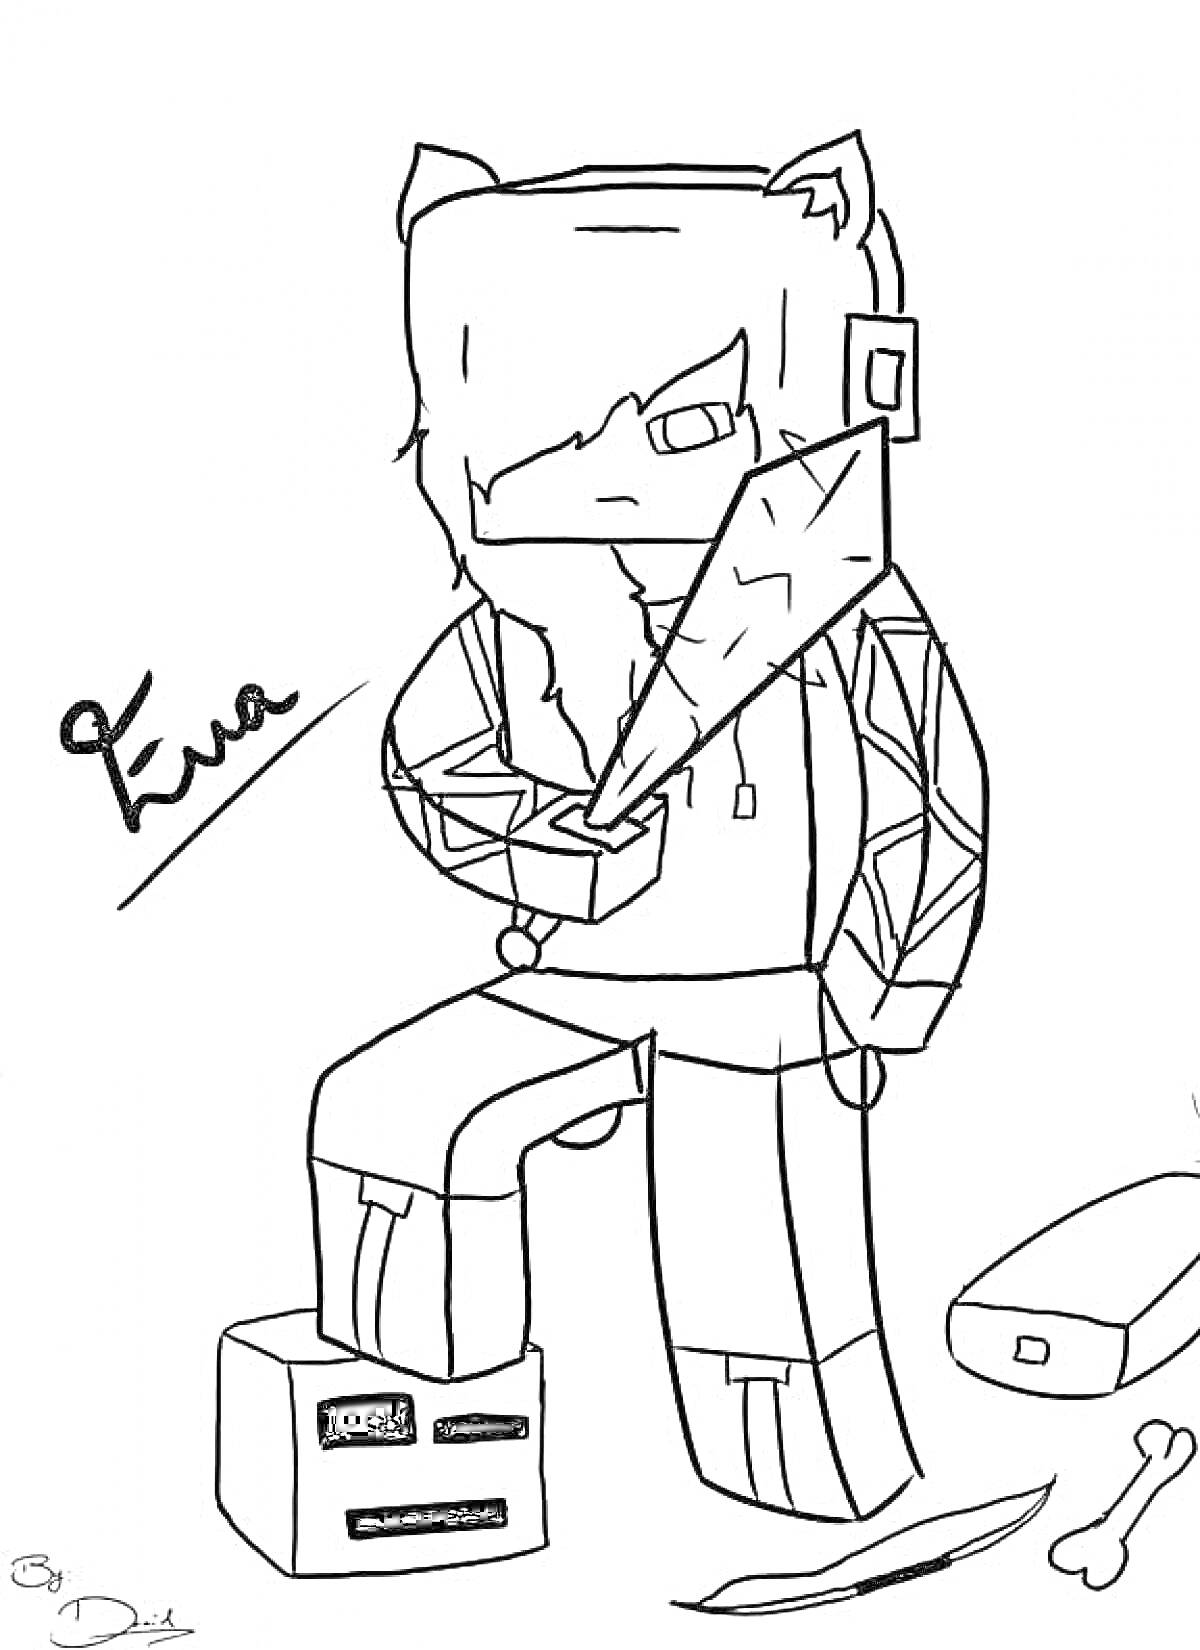 Раскраска Человек с кошачьими ушами и очками, держащий меч, стоящий на кубике с лицом, рядом нож, кость и прямоугольный предмет